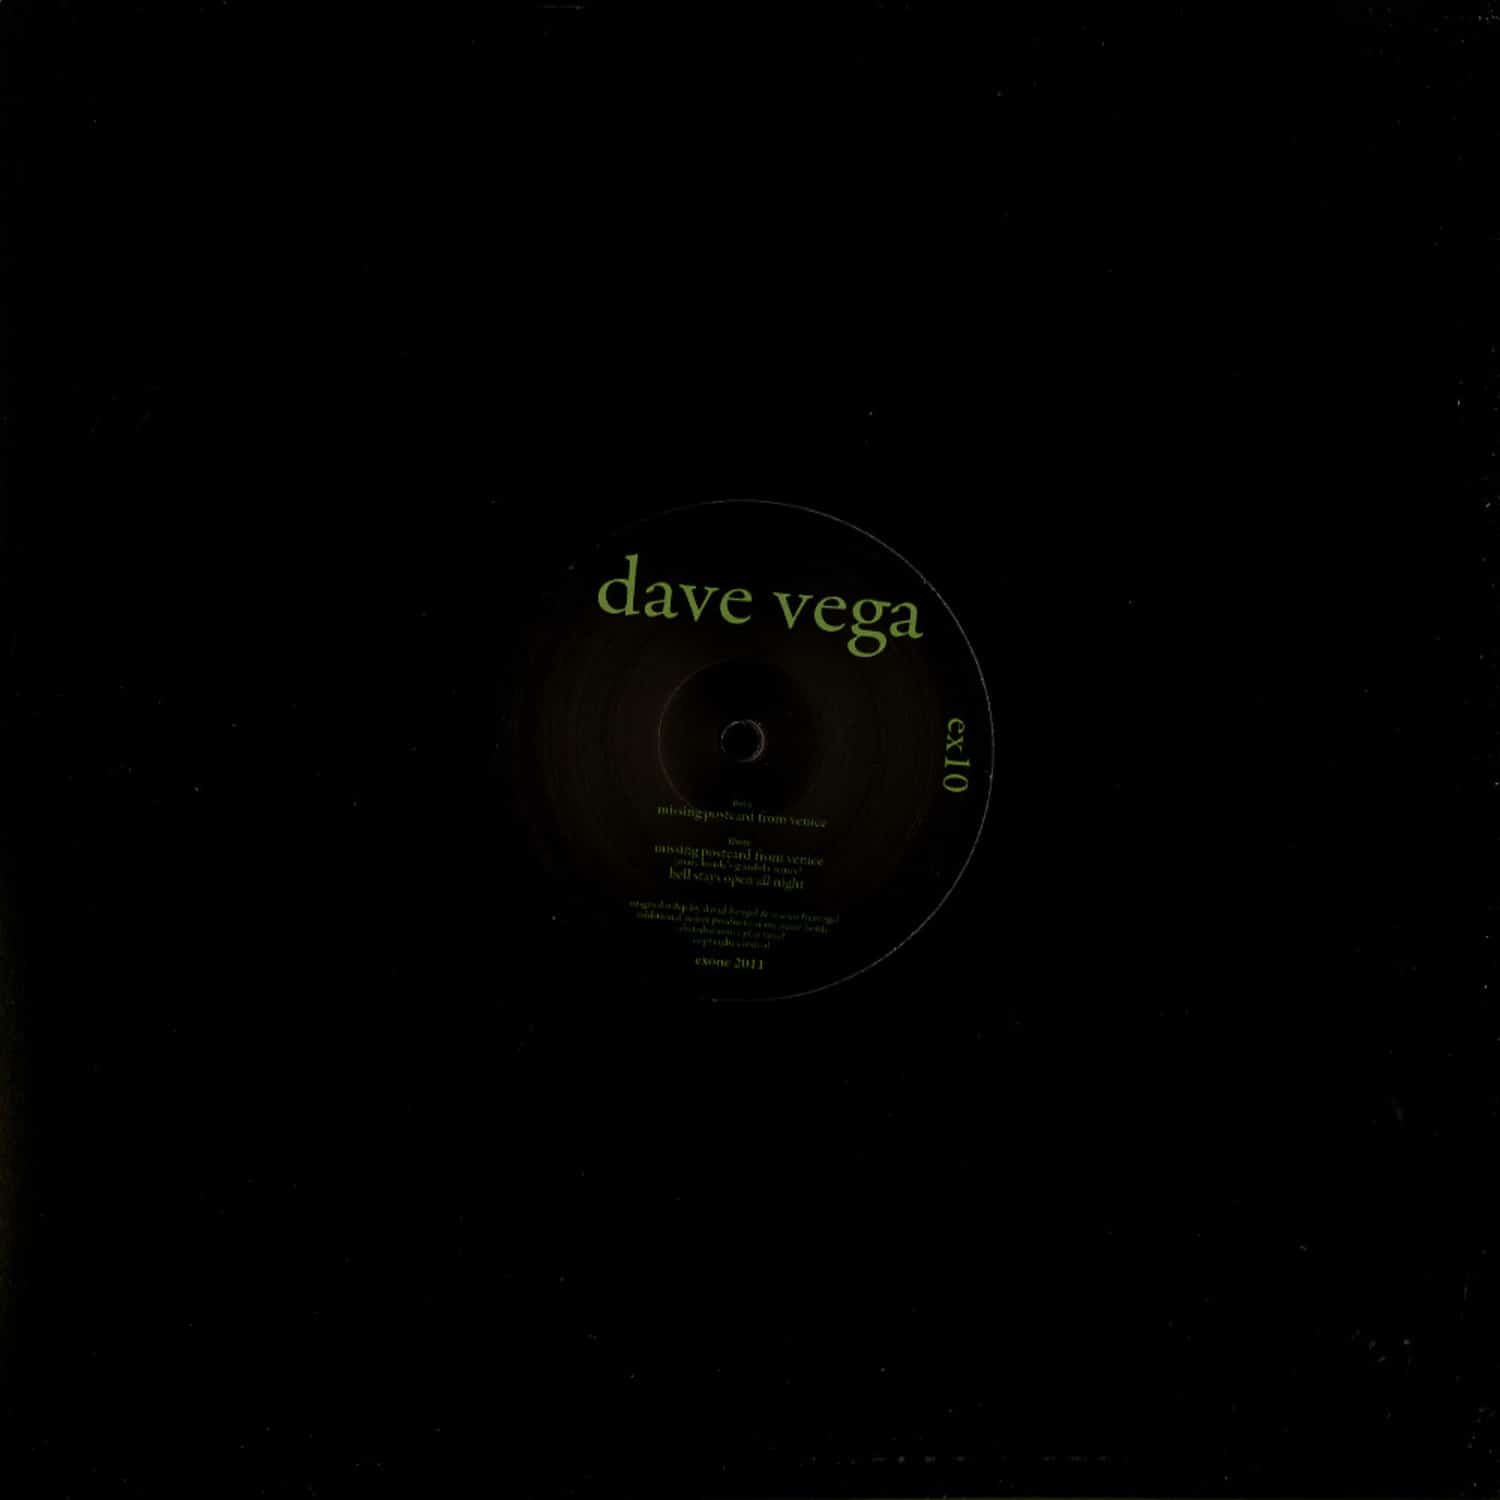 Dave Vega - MISSING POSTCARD FROM VENICE